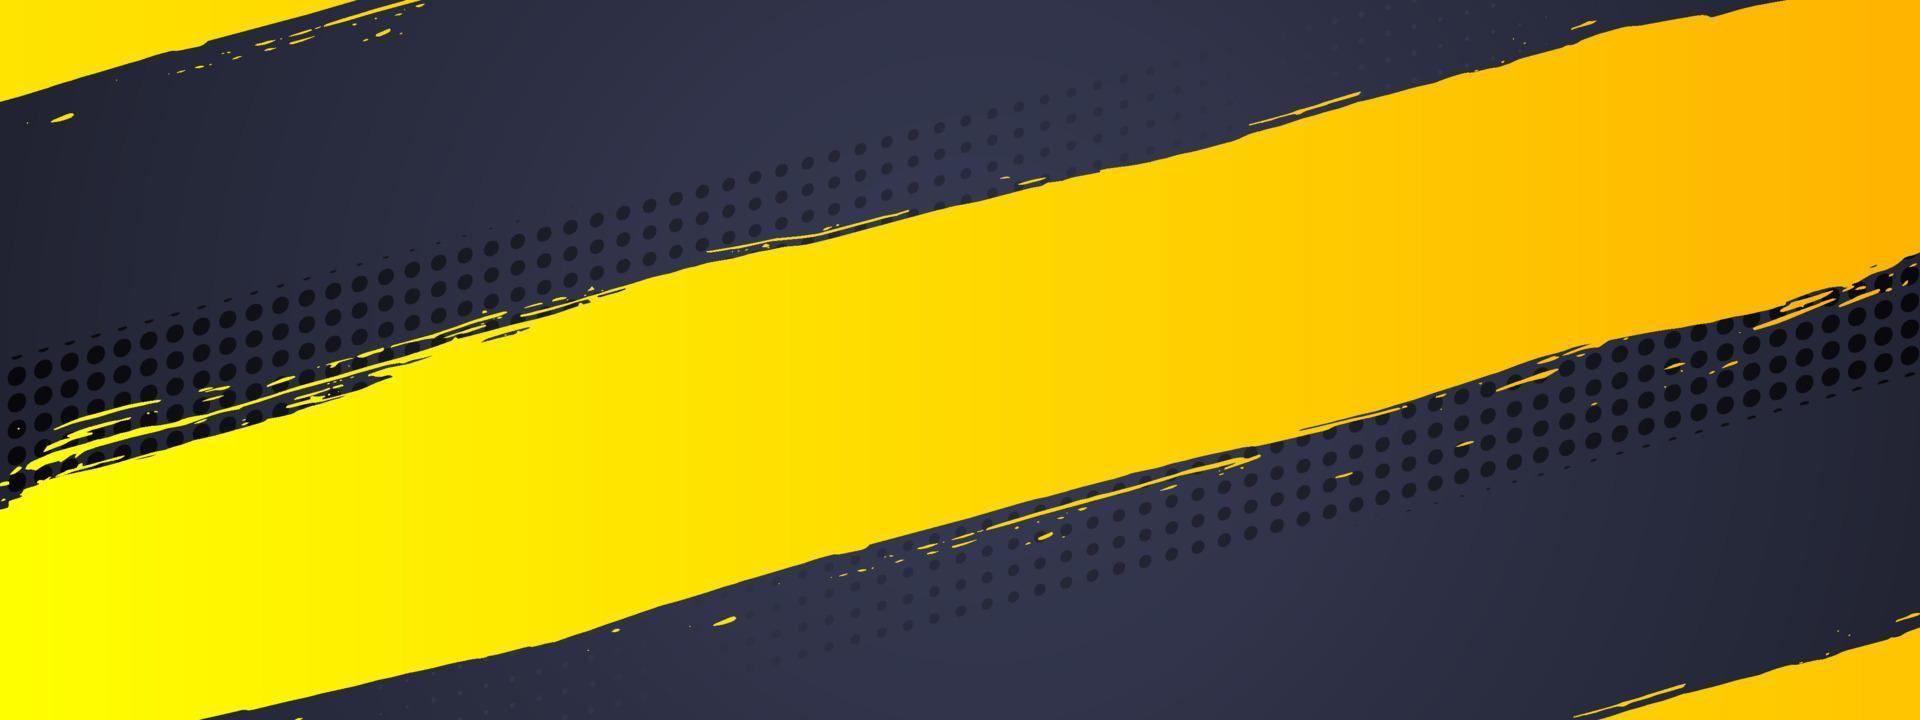 vector de fondo de grunge abstracto con pincel de pintura y efecto de medio tono, diseño de plantilla de banner horizontal con color negro y amarillo degradado